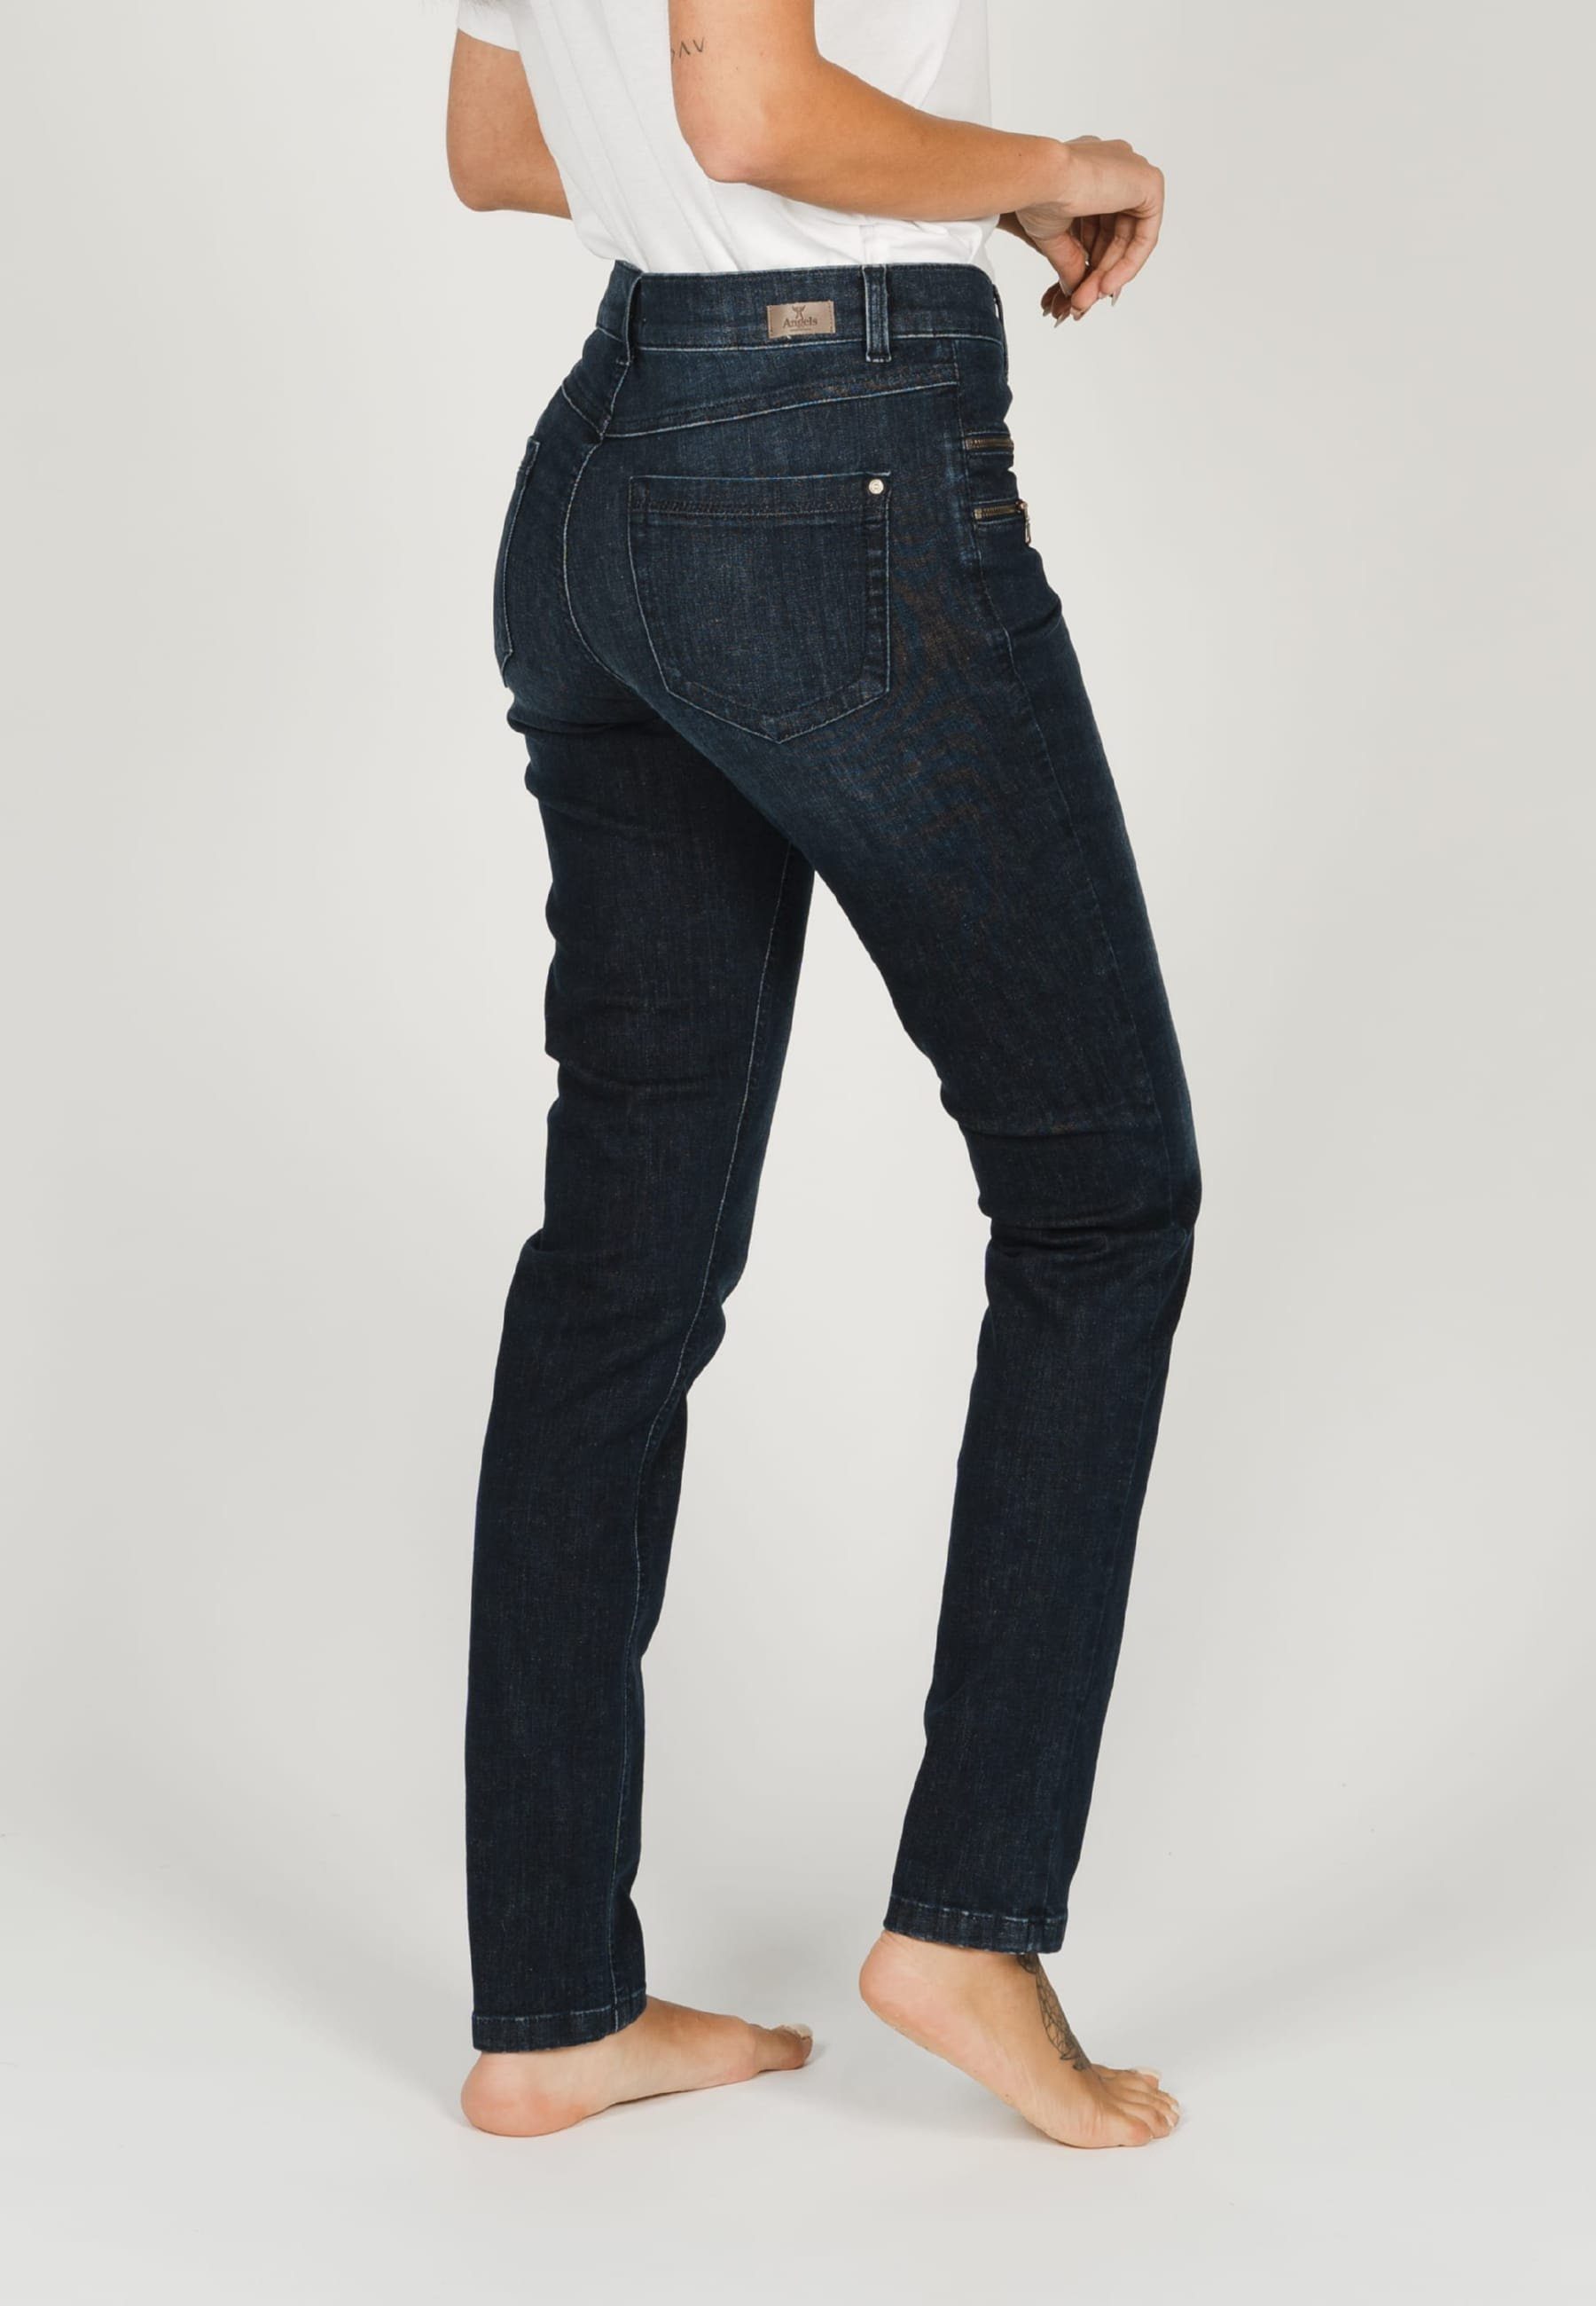 ANGELS Slim-fit-Jeans Jeans Zierreißverschlüssen Label-Applikationen Zip mit mit indigo Malu